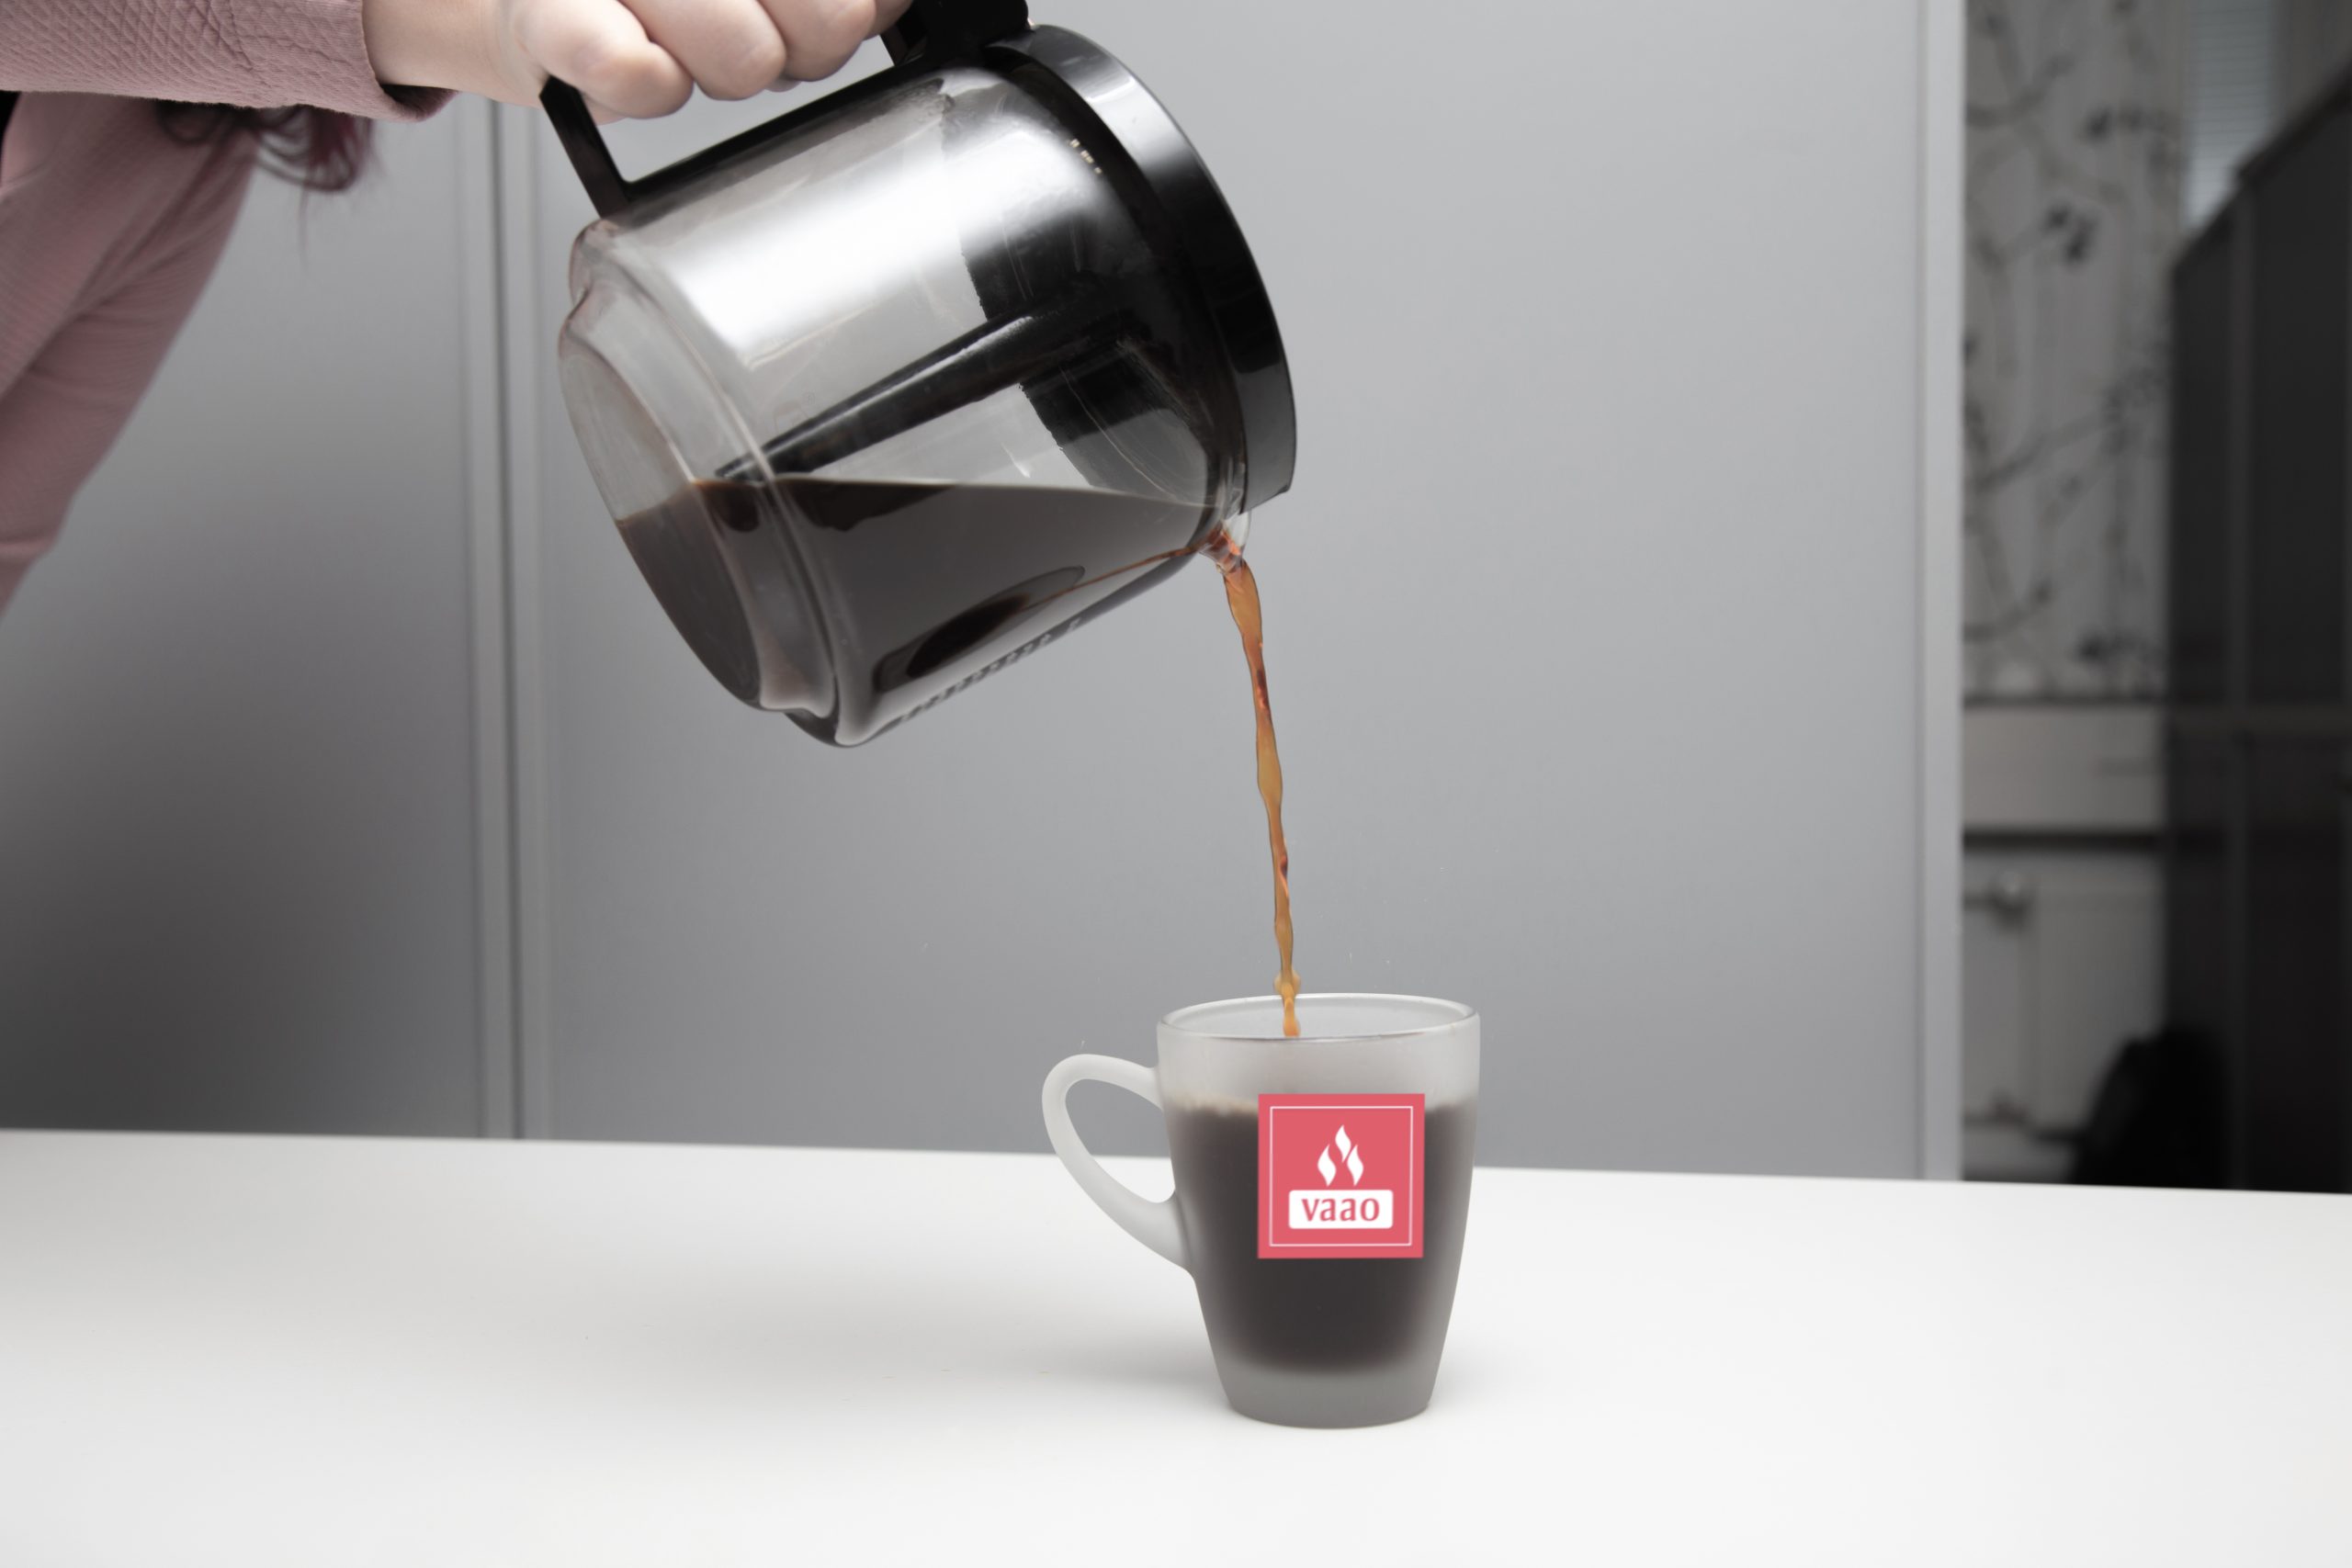 Valkeakosken ammattiopisto, VAAO. Läpinäkyvästä kahvipannusta kaadetaan kahvia pöydällä olevaan läpinäkyvään mukiin. Mukissa on VAAOn punainen logo.